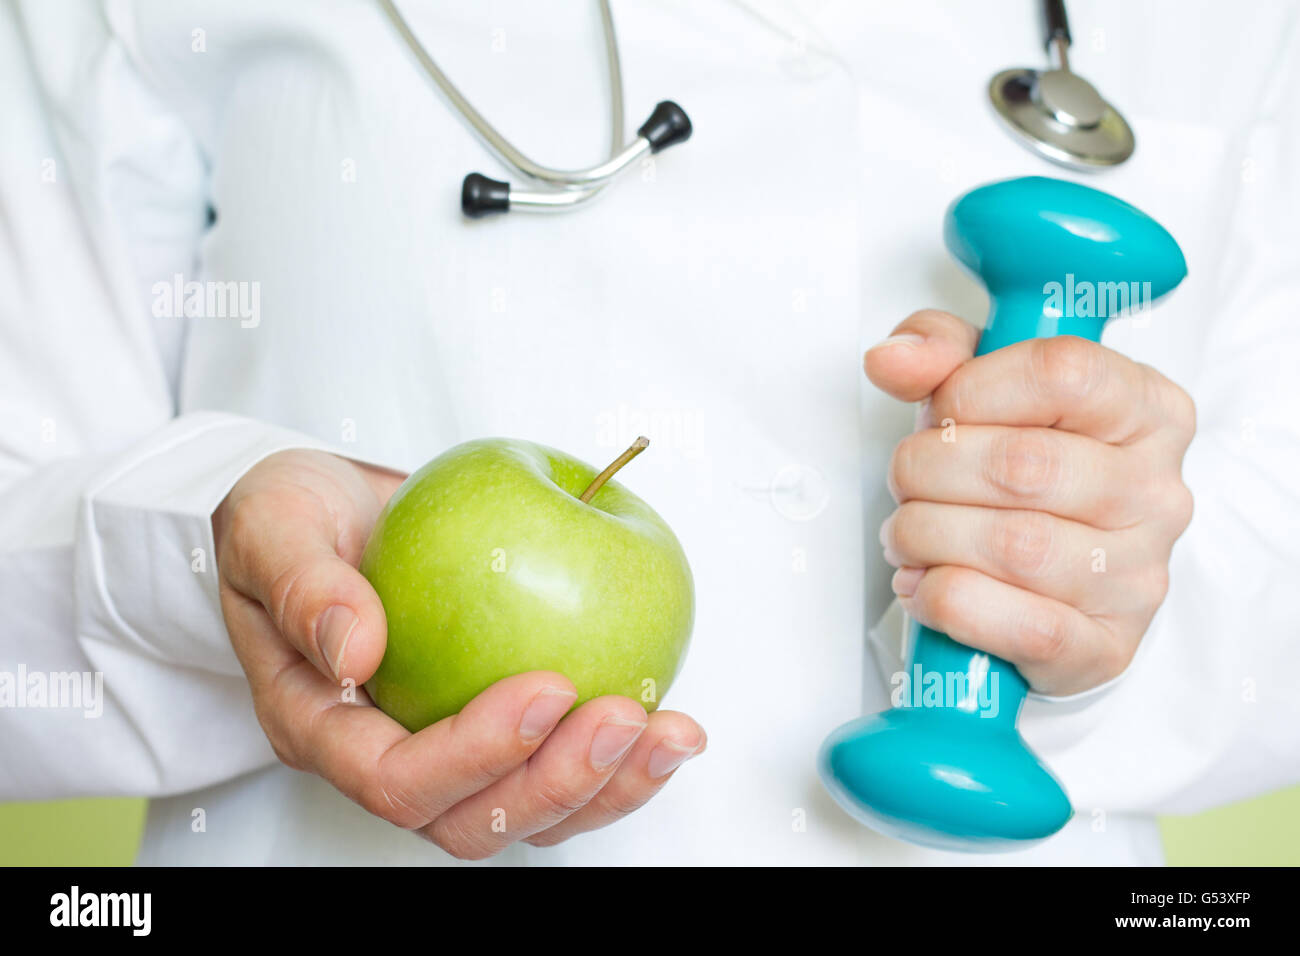 Uno stile di vita sano e fitness la dieta concetto astratto con medico su sfondo verde Foto Stock